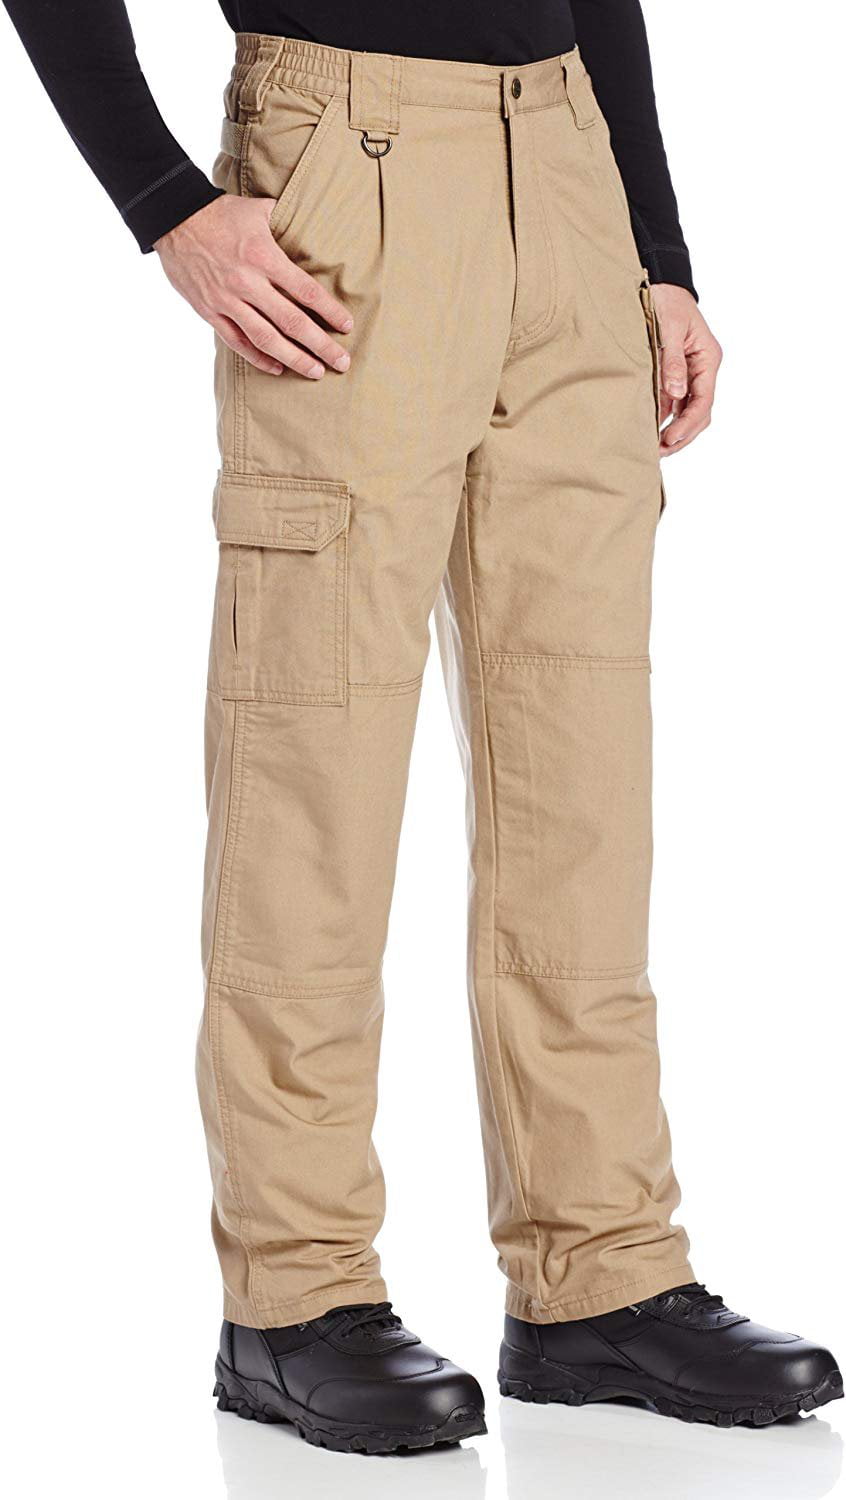 5.11 Tactical Men's Cotton Tactical Pant, Coyote Brown - Walmart.com